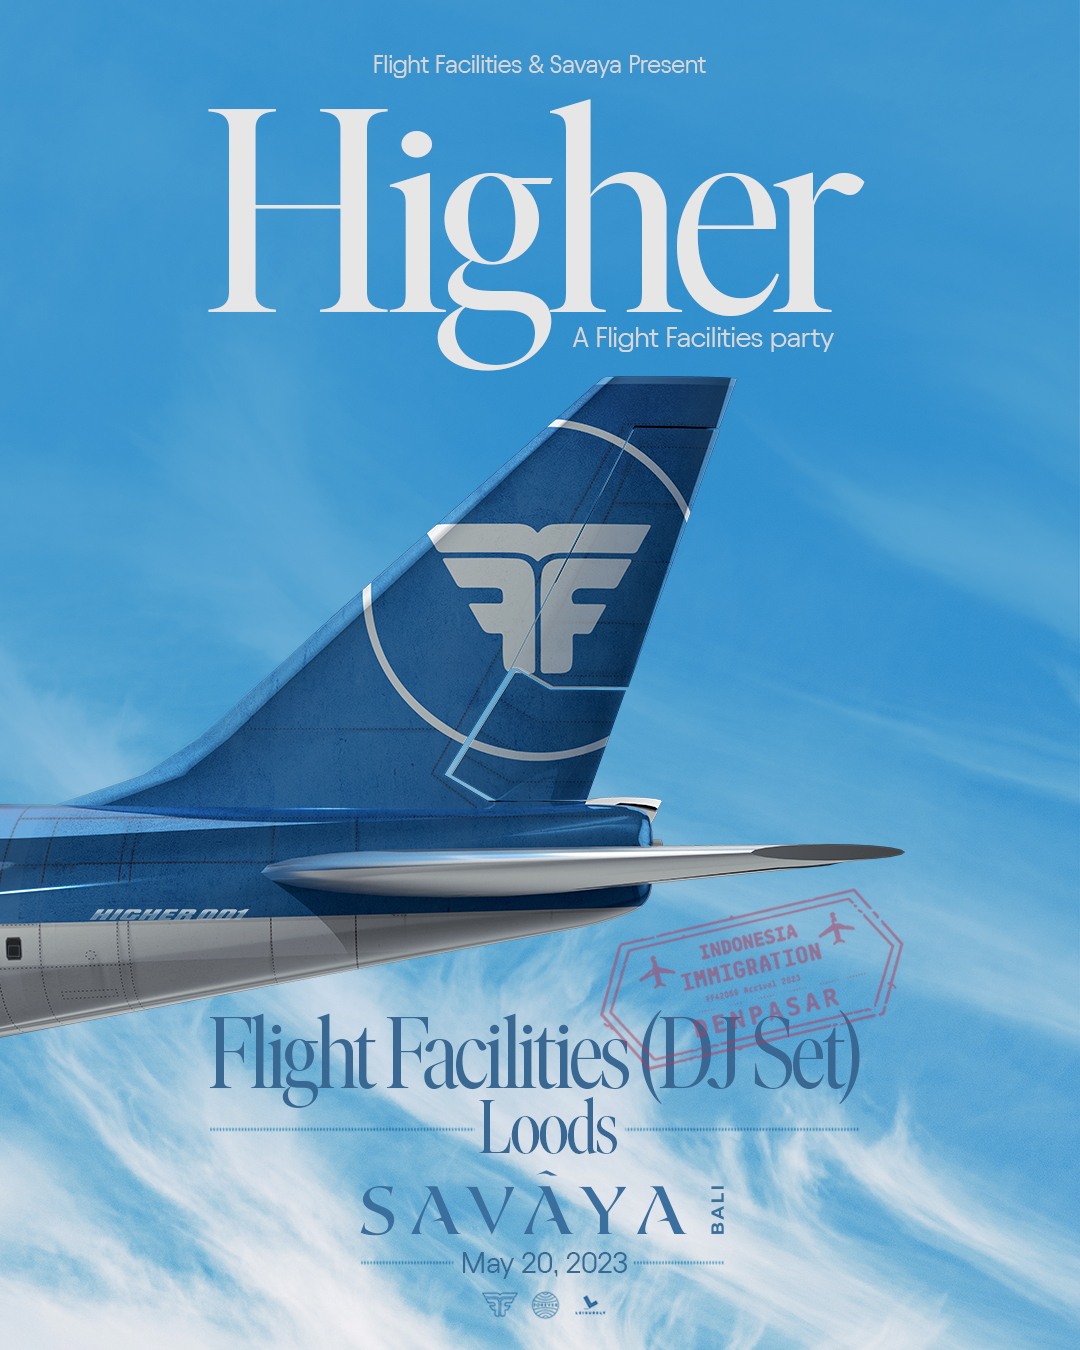 SAVAYA PRESENTS HIGHER, A FLIGHT FACILITIES PARTY – SATURDAY MAY 20TH thumbnail image